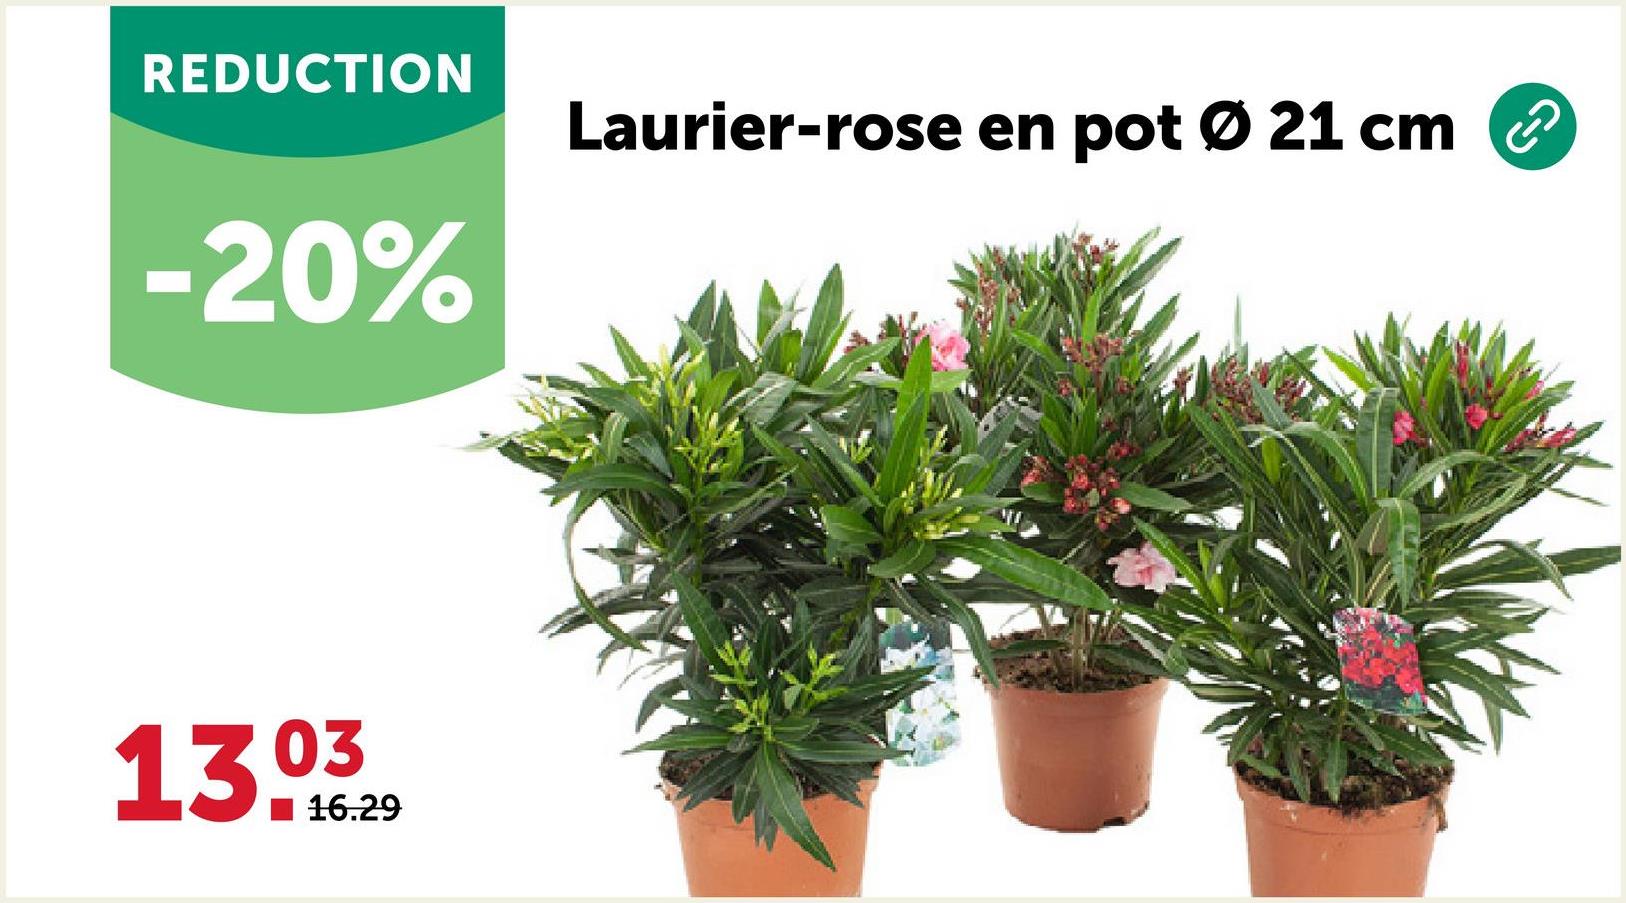 REDUCTION
-20%
13.03
16.29
Laurier-rose en pot Ø 21 cm ②